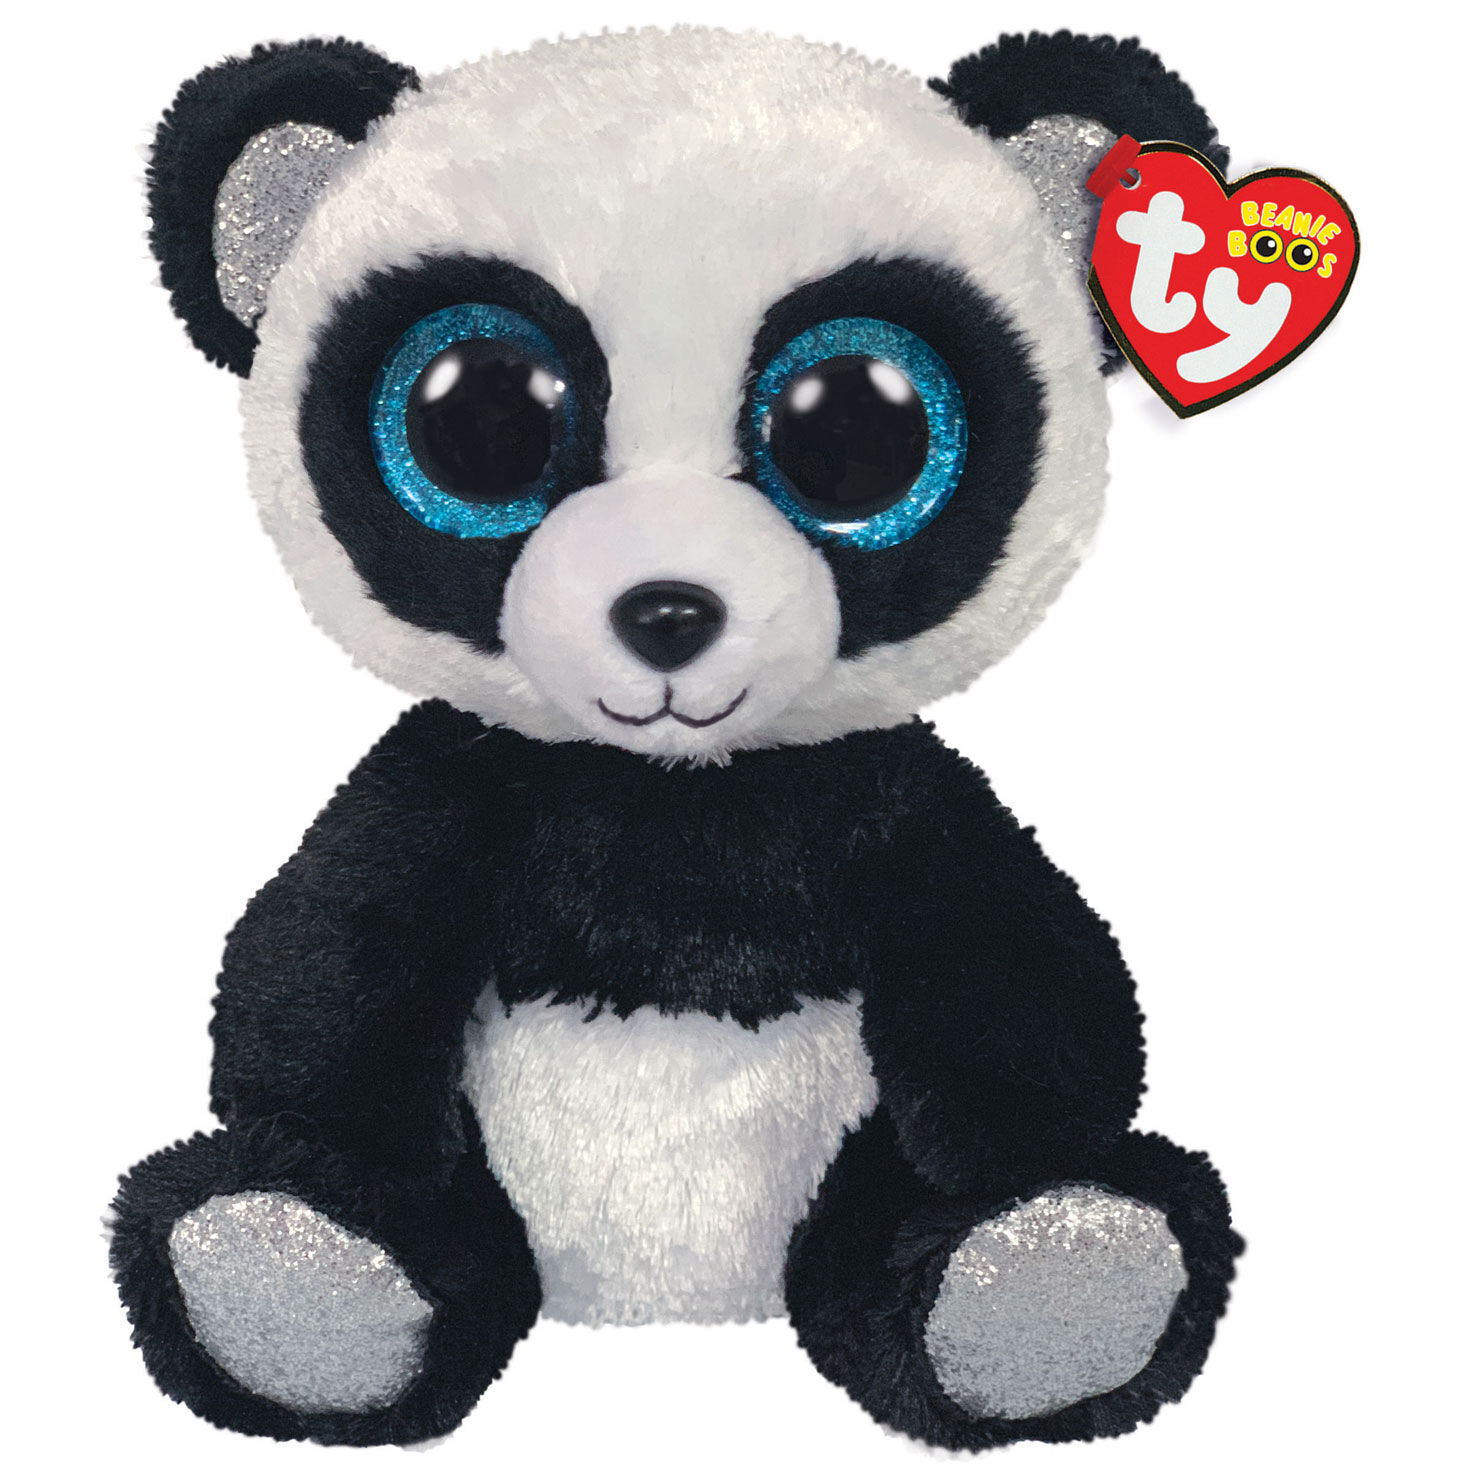 panda stuffed animals